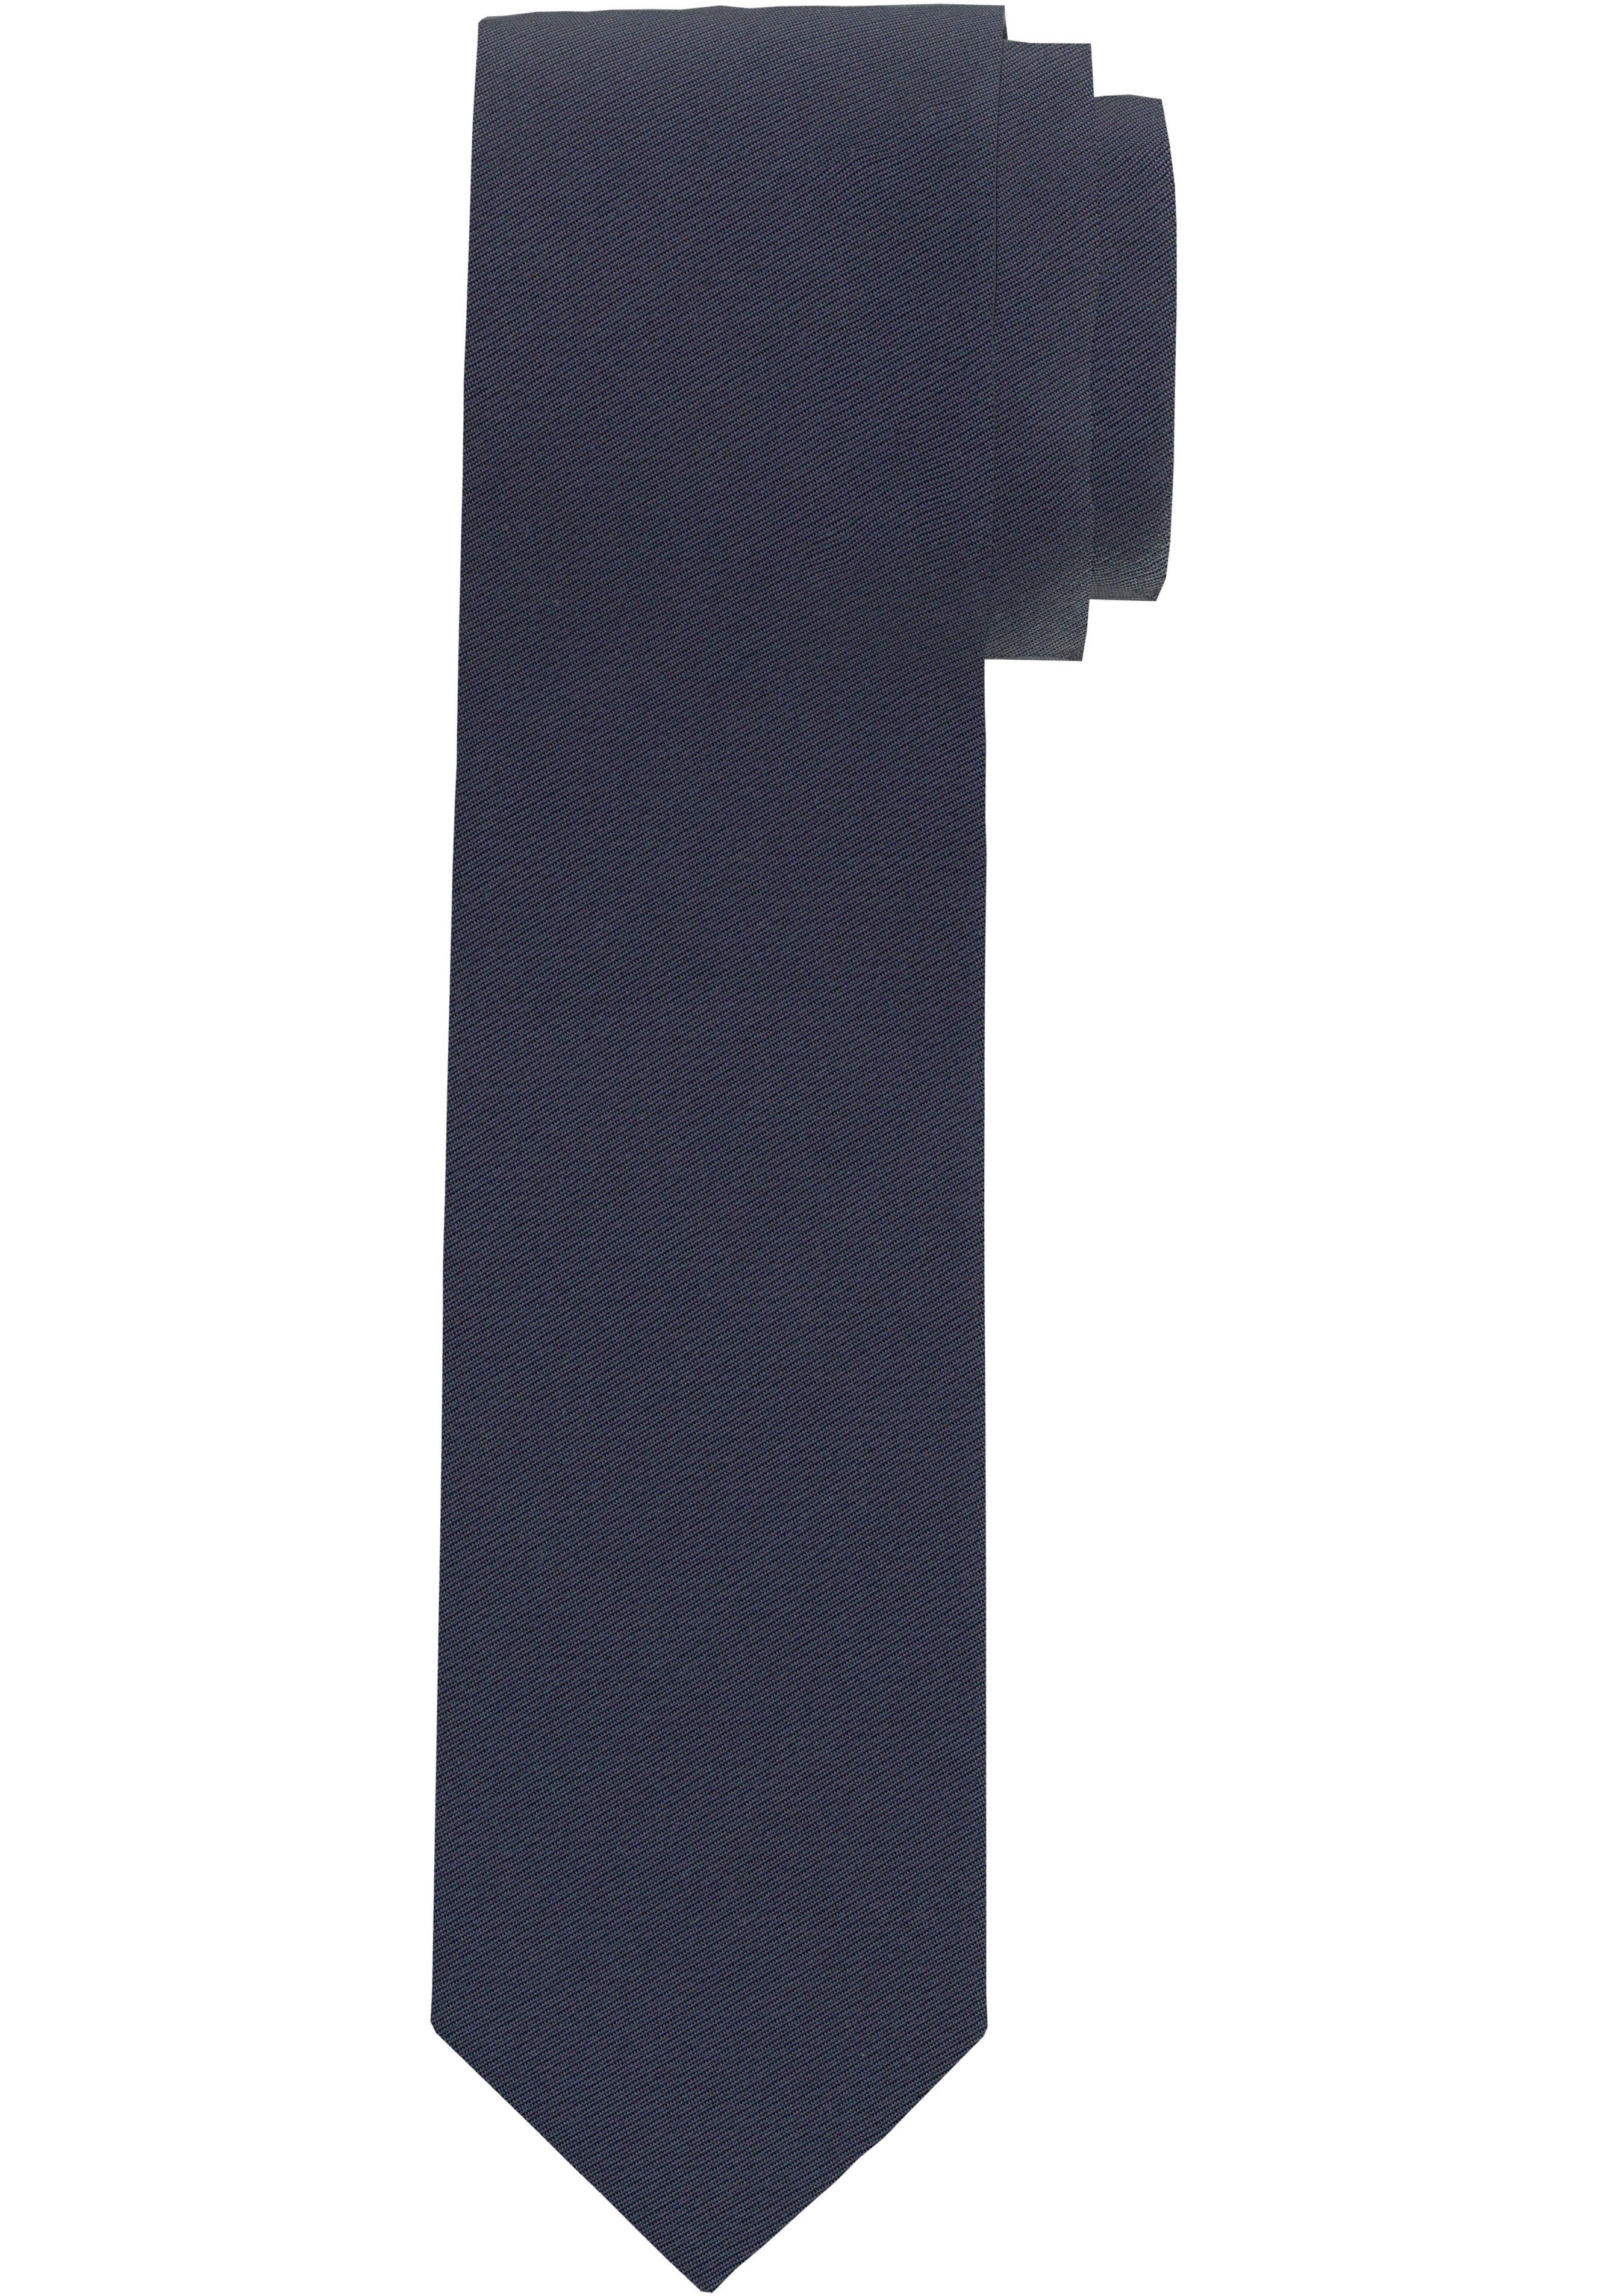 OLYMP Seidenkrawatte marine Krawatte